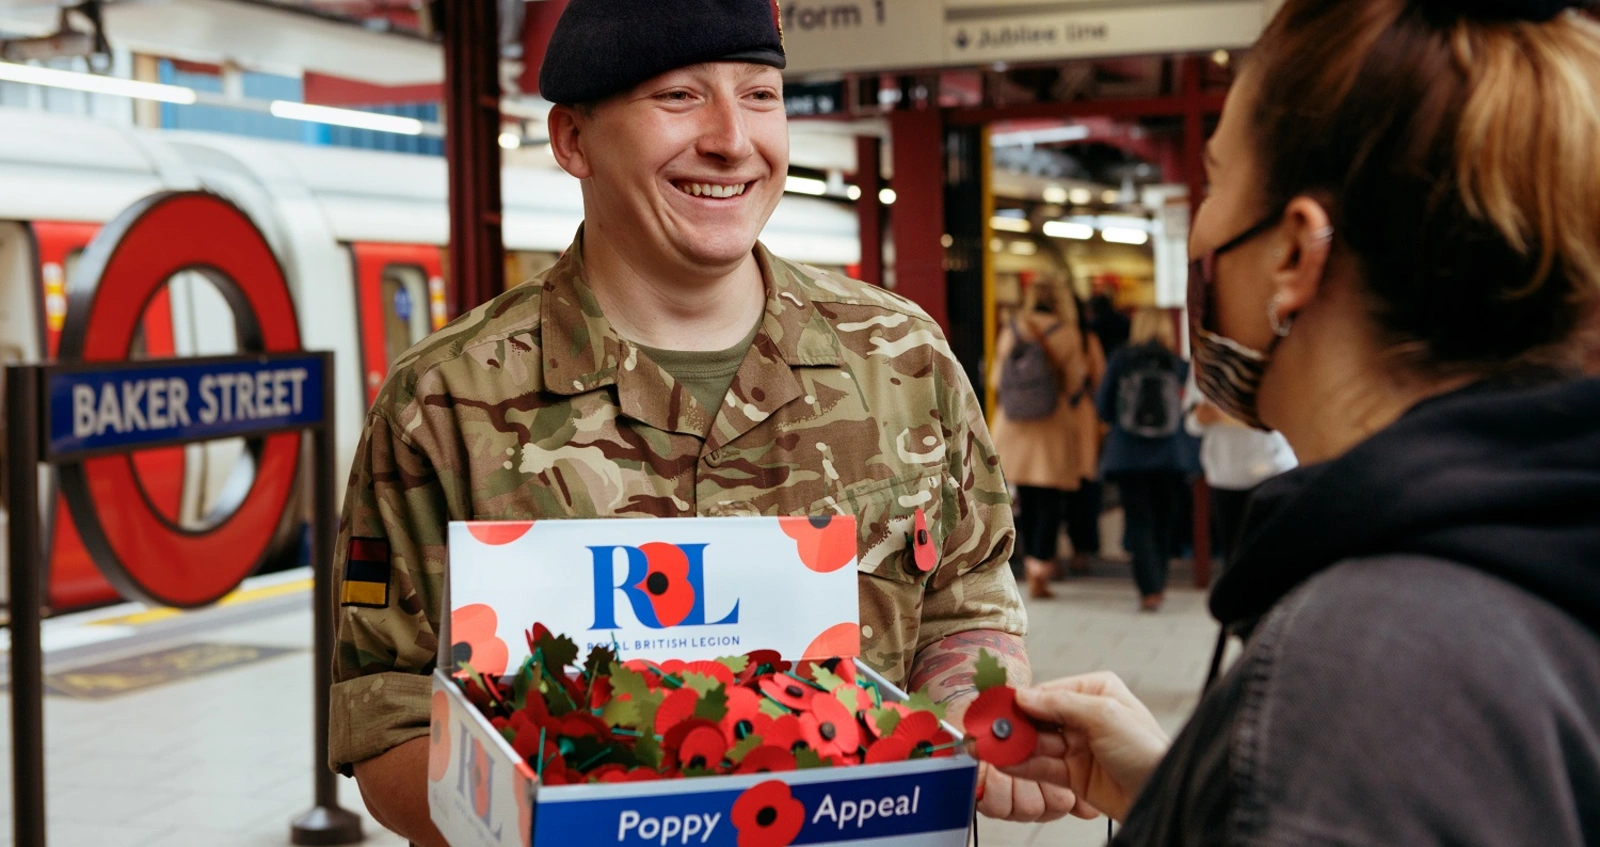 London Poppy Day | Poppy Appell | Royal British Legion